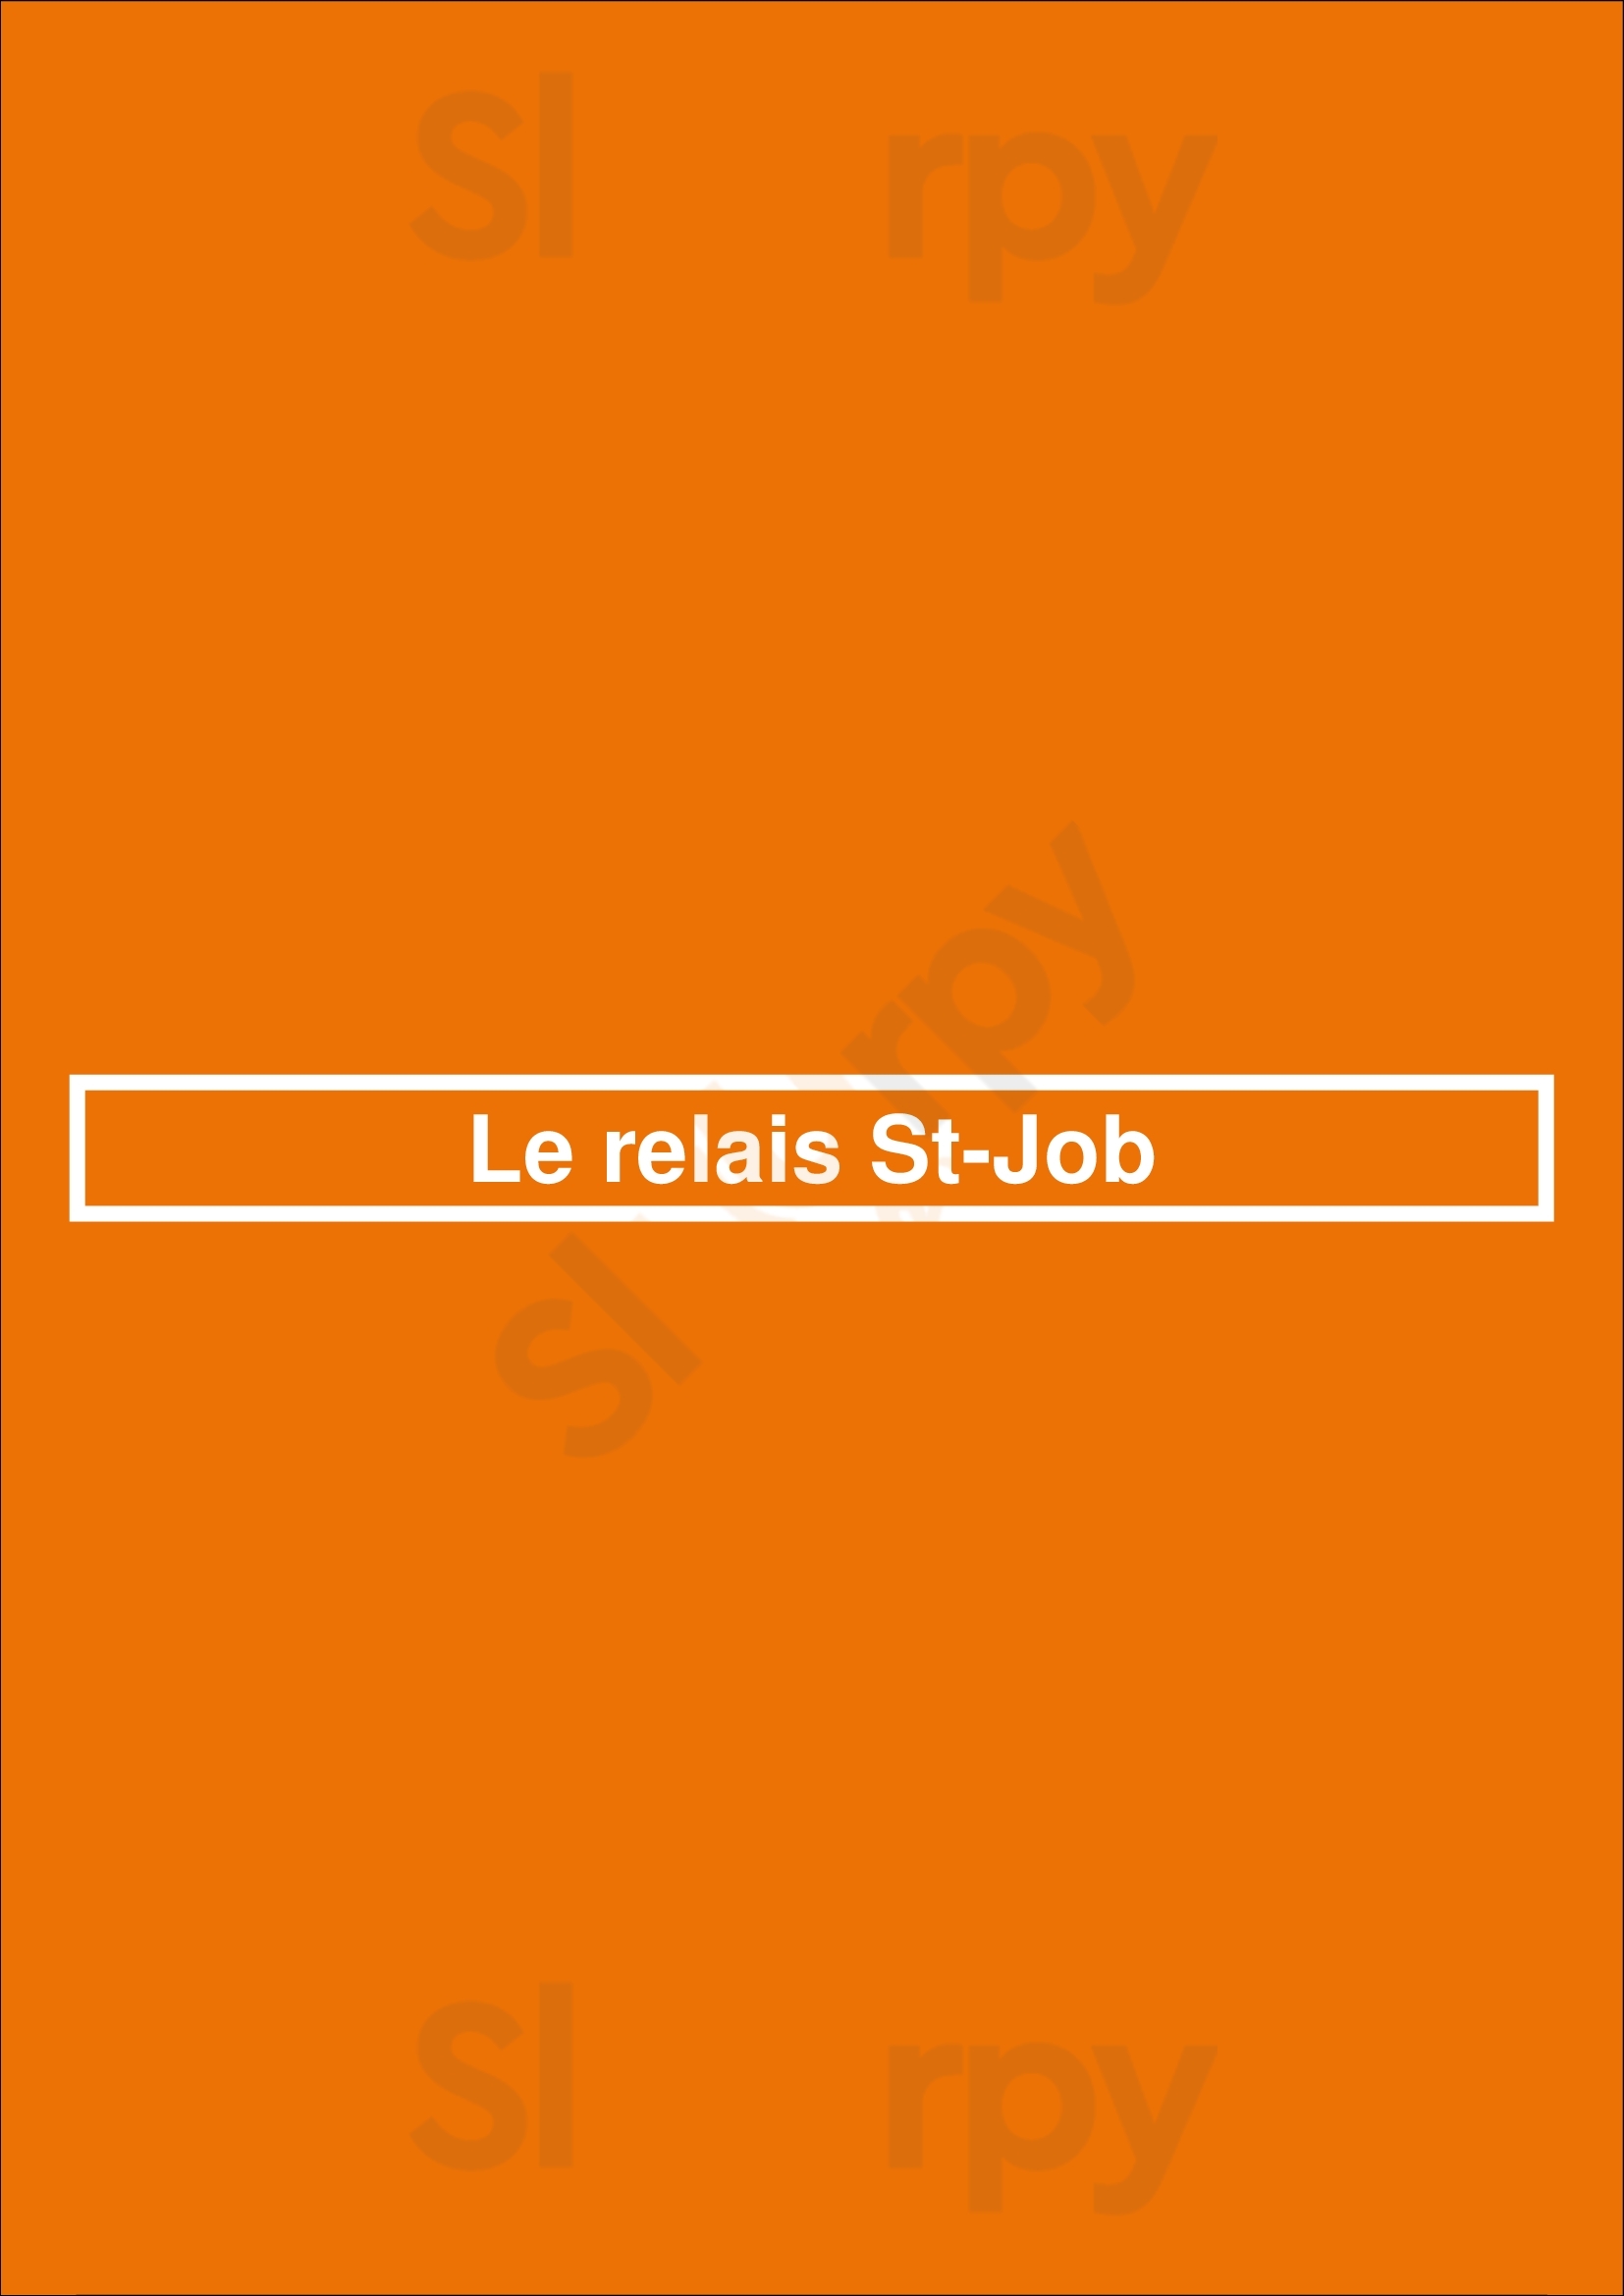 Le Relais St-job Uccle Menu - 1